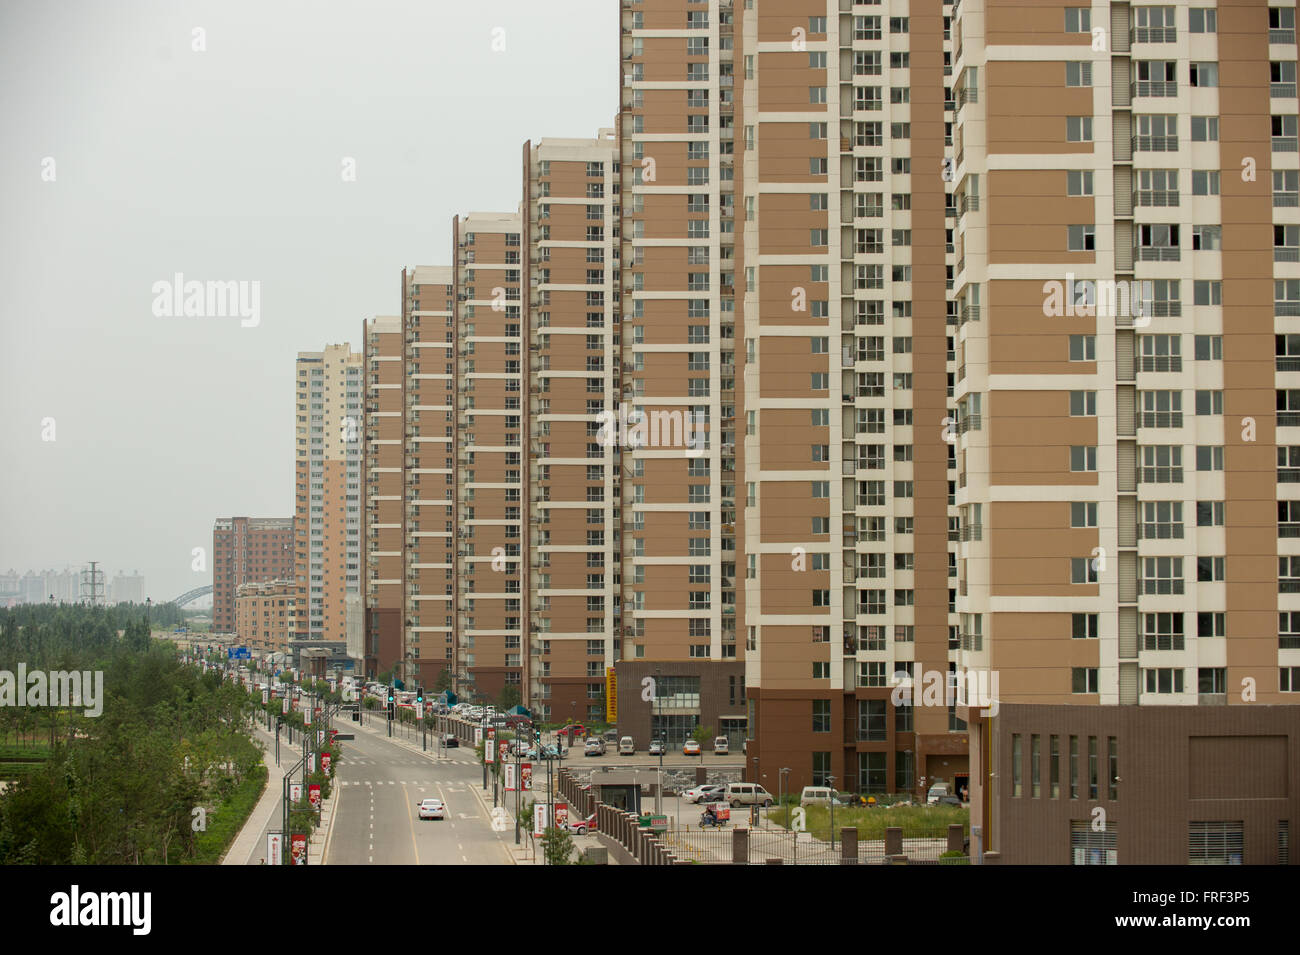 edifici-vuoti-di-appartamenti-alla-periferia-di-pechino-cina-frf3p5.jpg